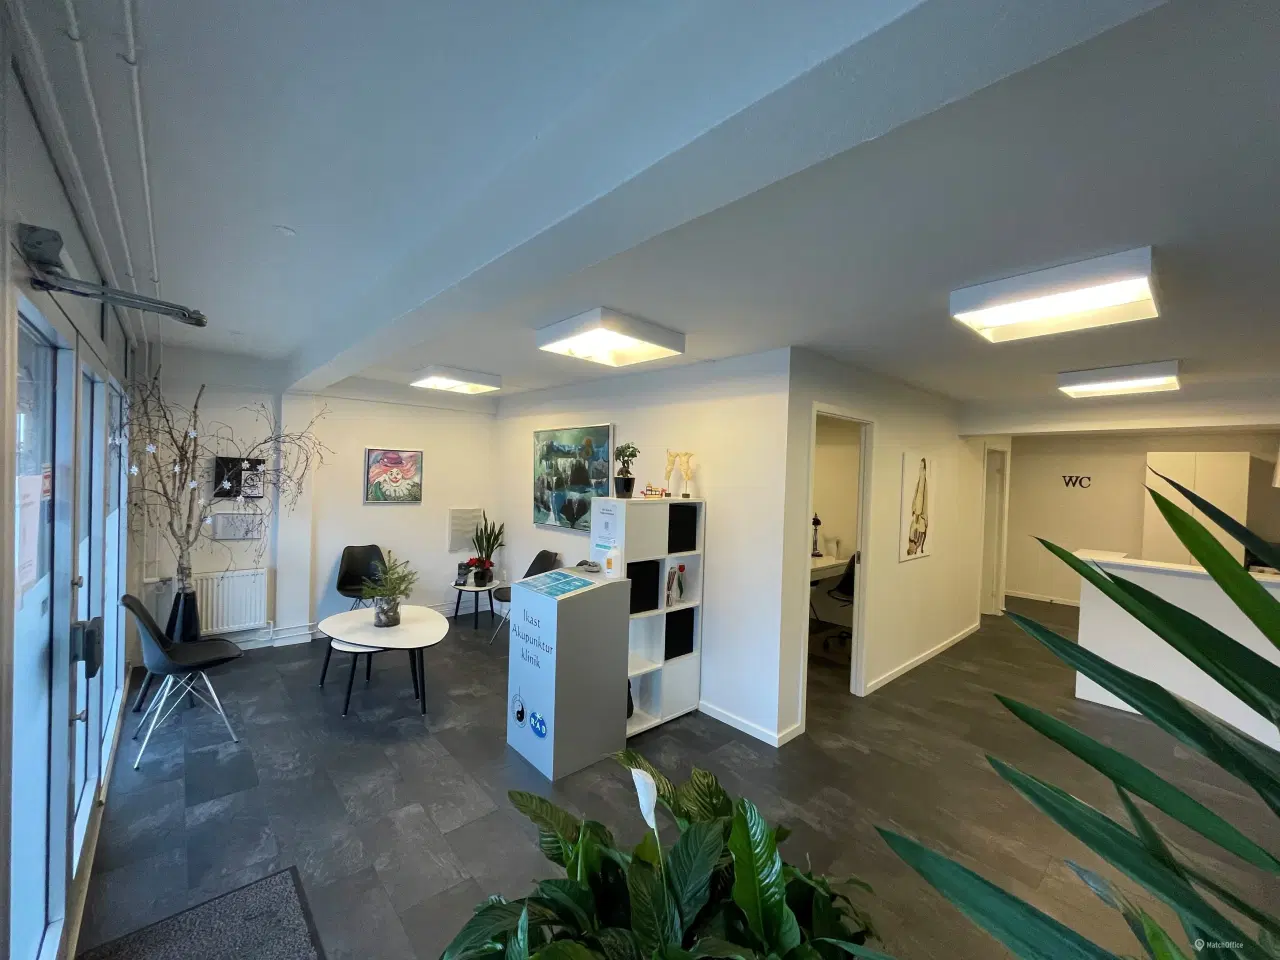 Billede 3 - 110 m2 kontor, klinik, butik centralt i Ikast by.